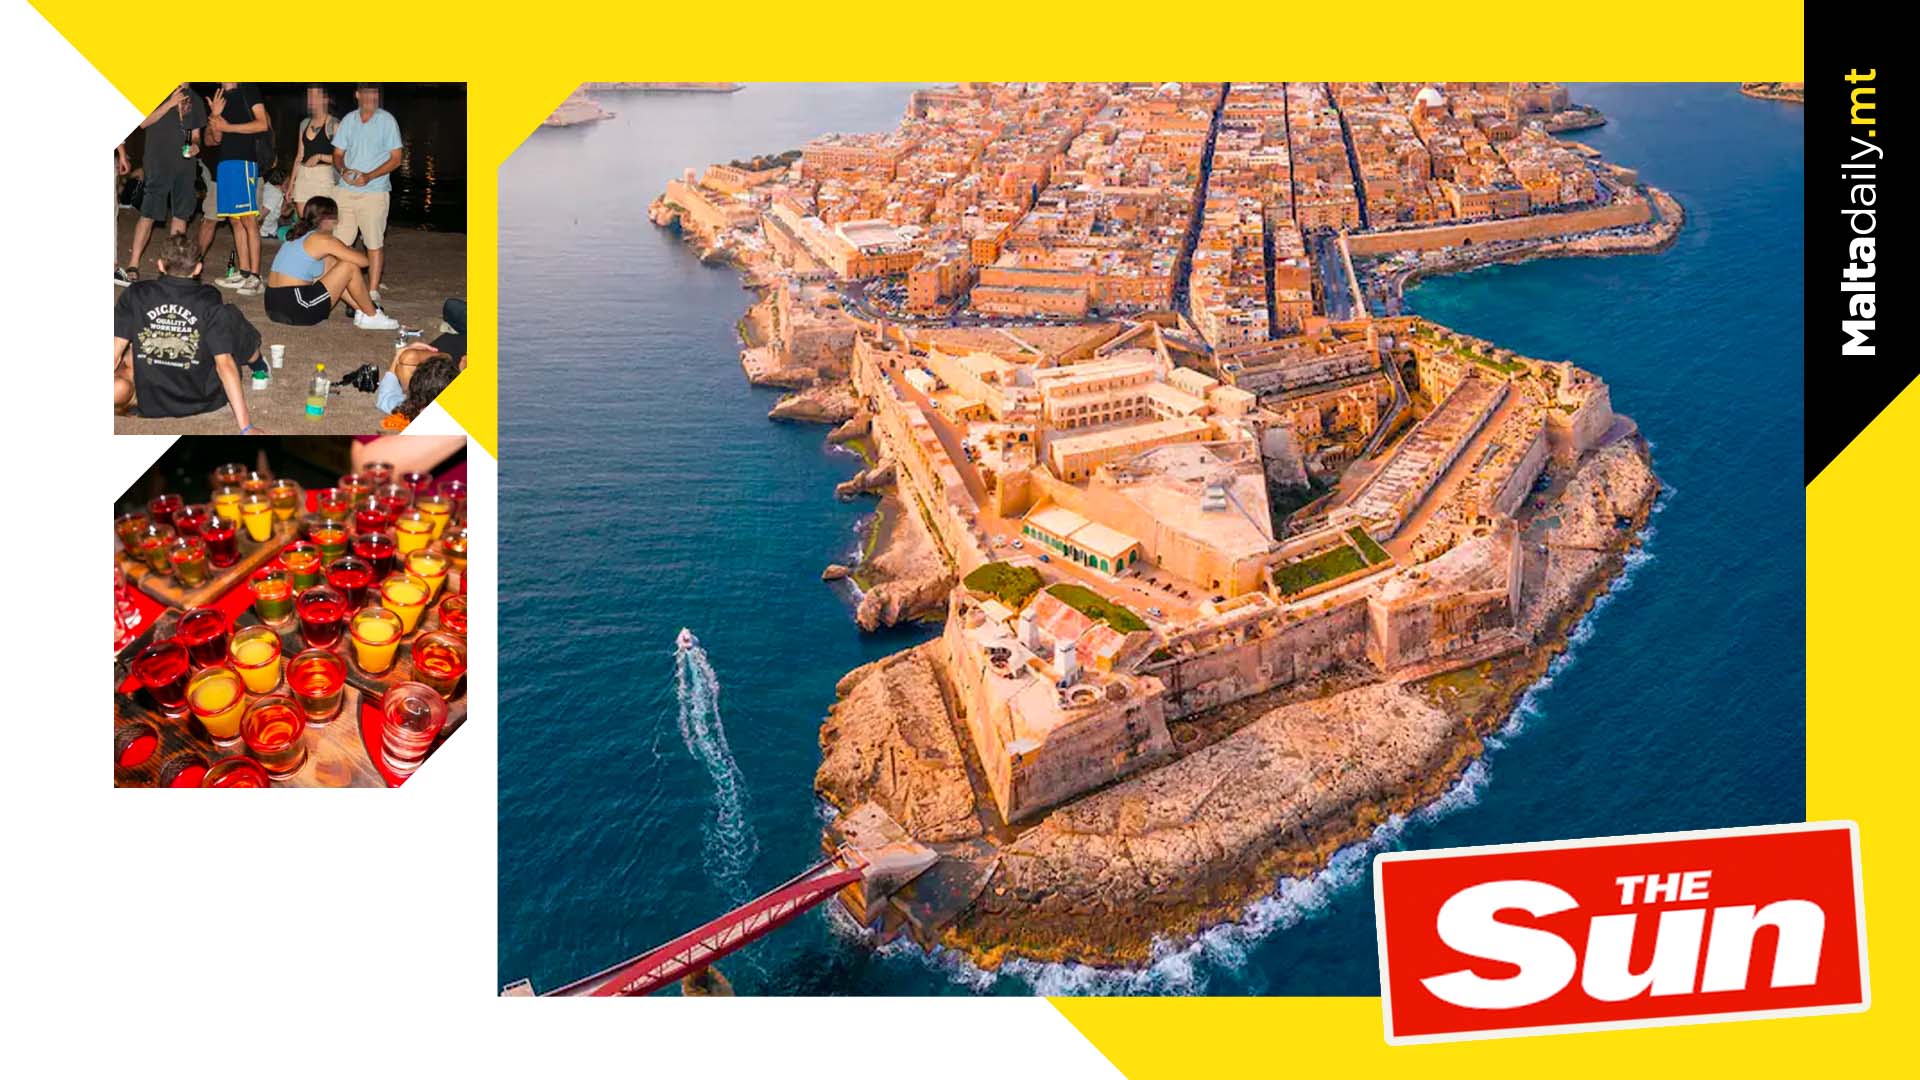 The Sun Describes Malta As Amsterdam On The Sea